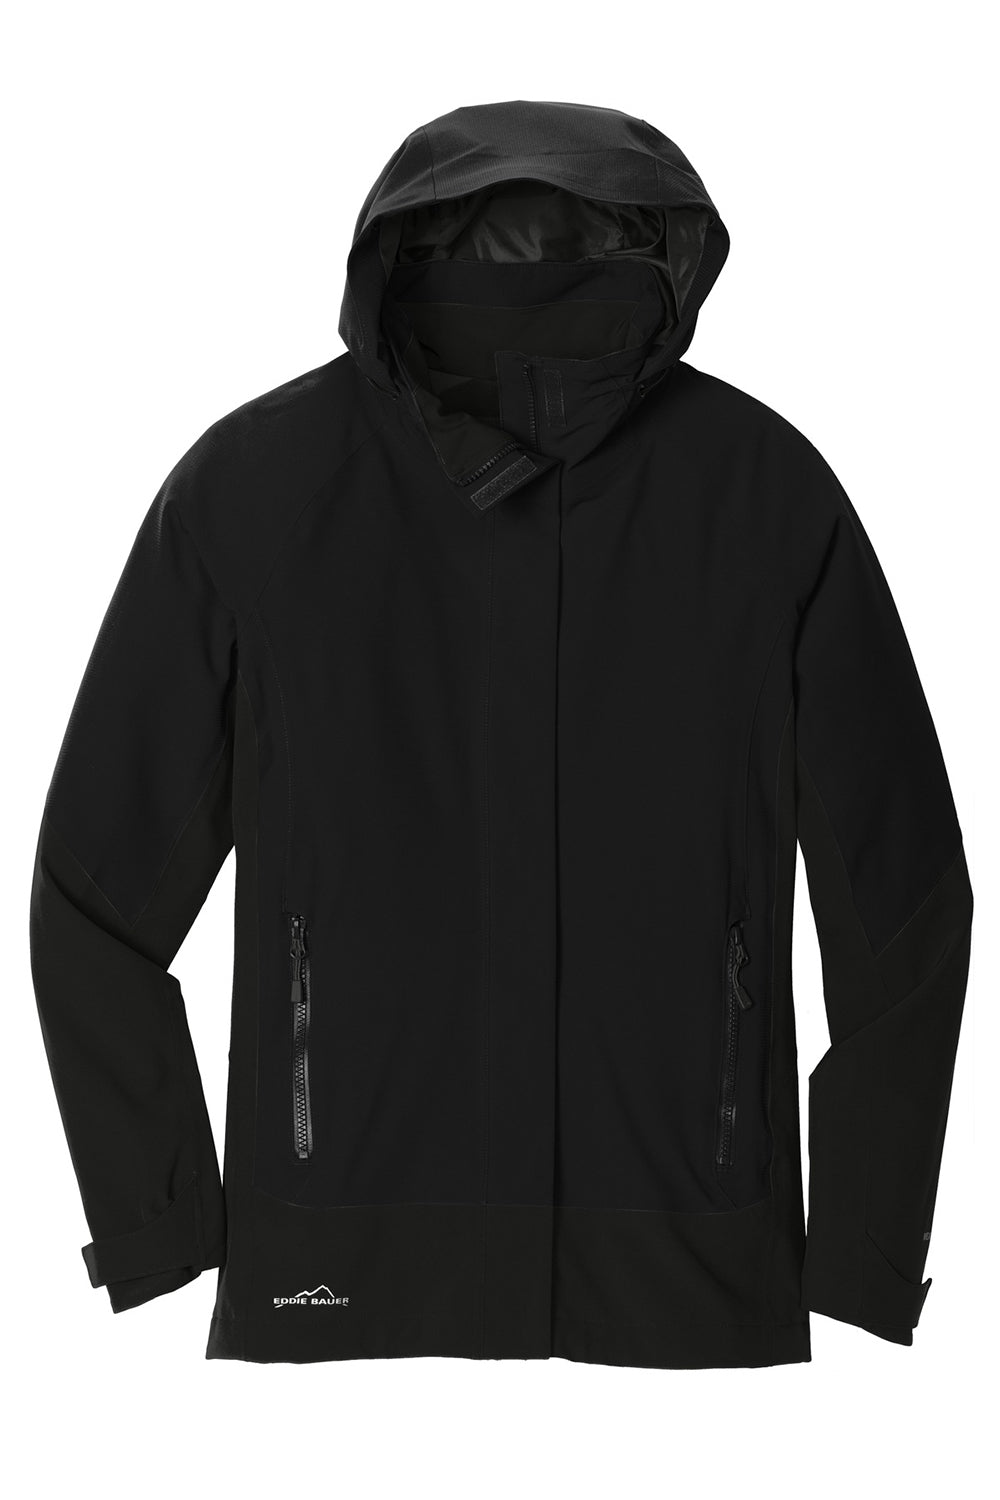 Eddie Bauer EB559 Womens WeatherEdge Waterproof Full Zip Hooded Jacket Black Flat Front